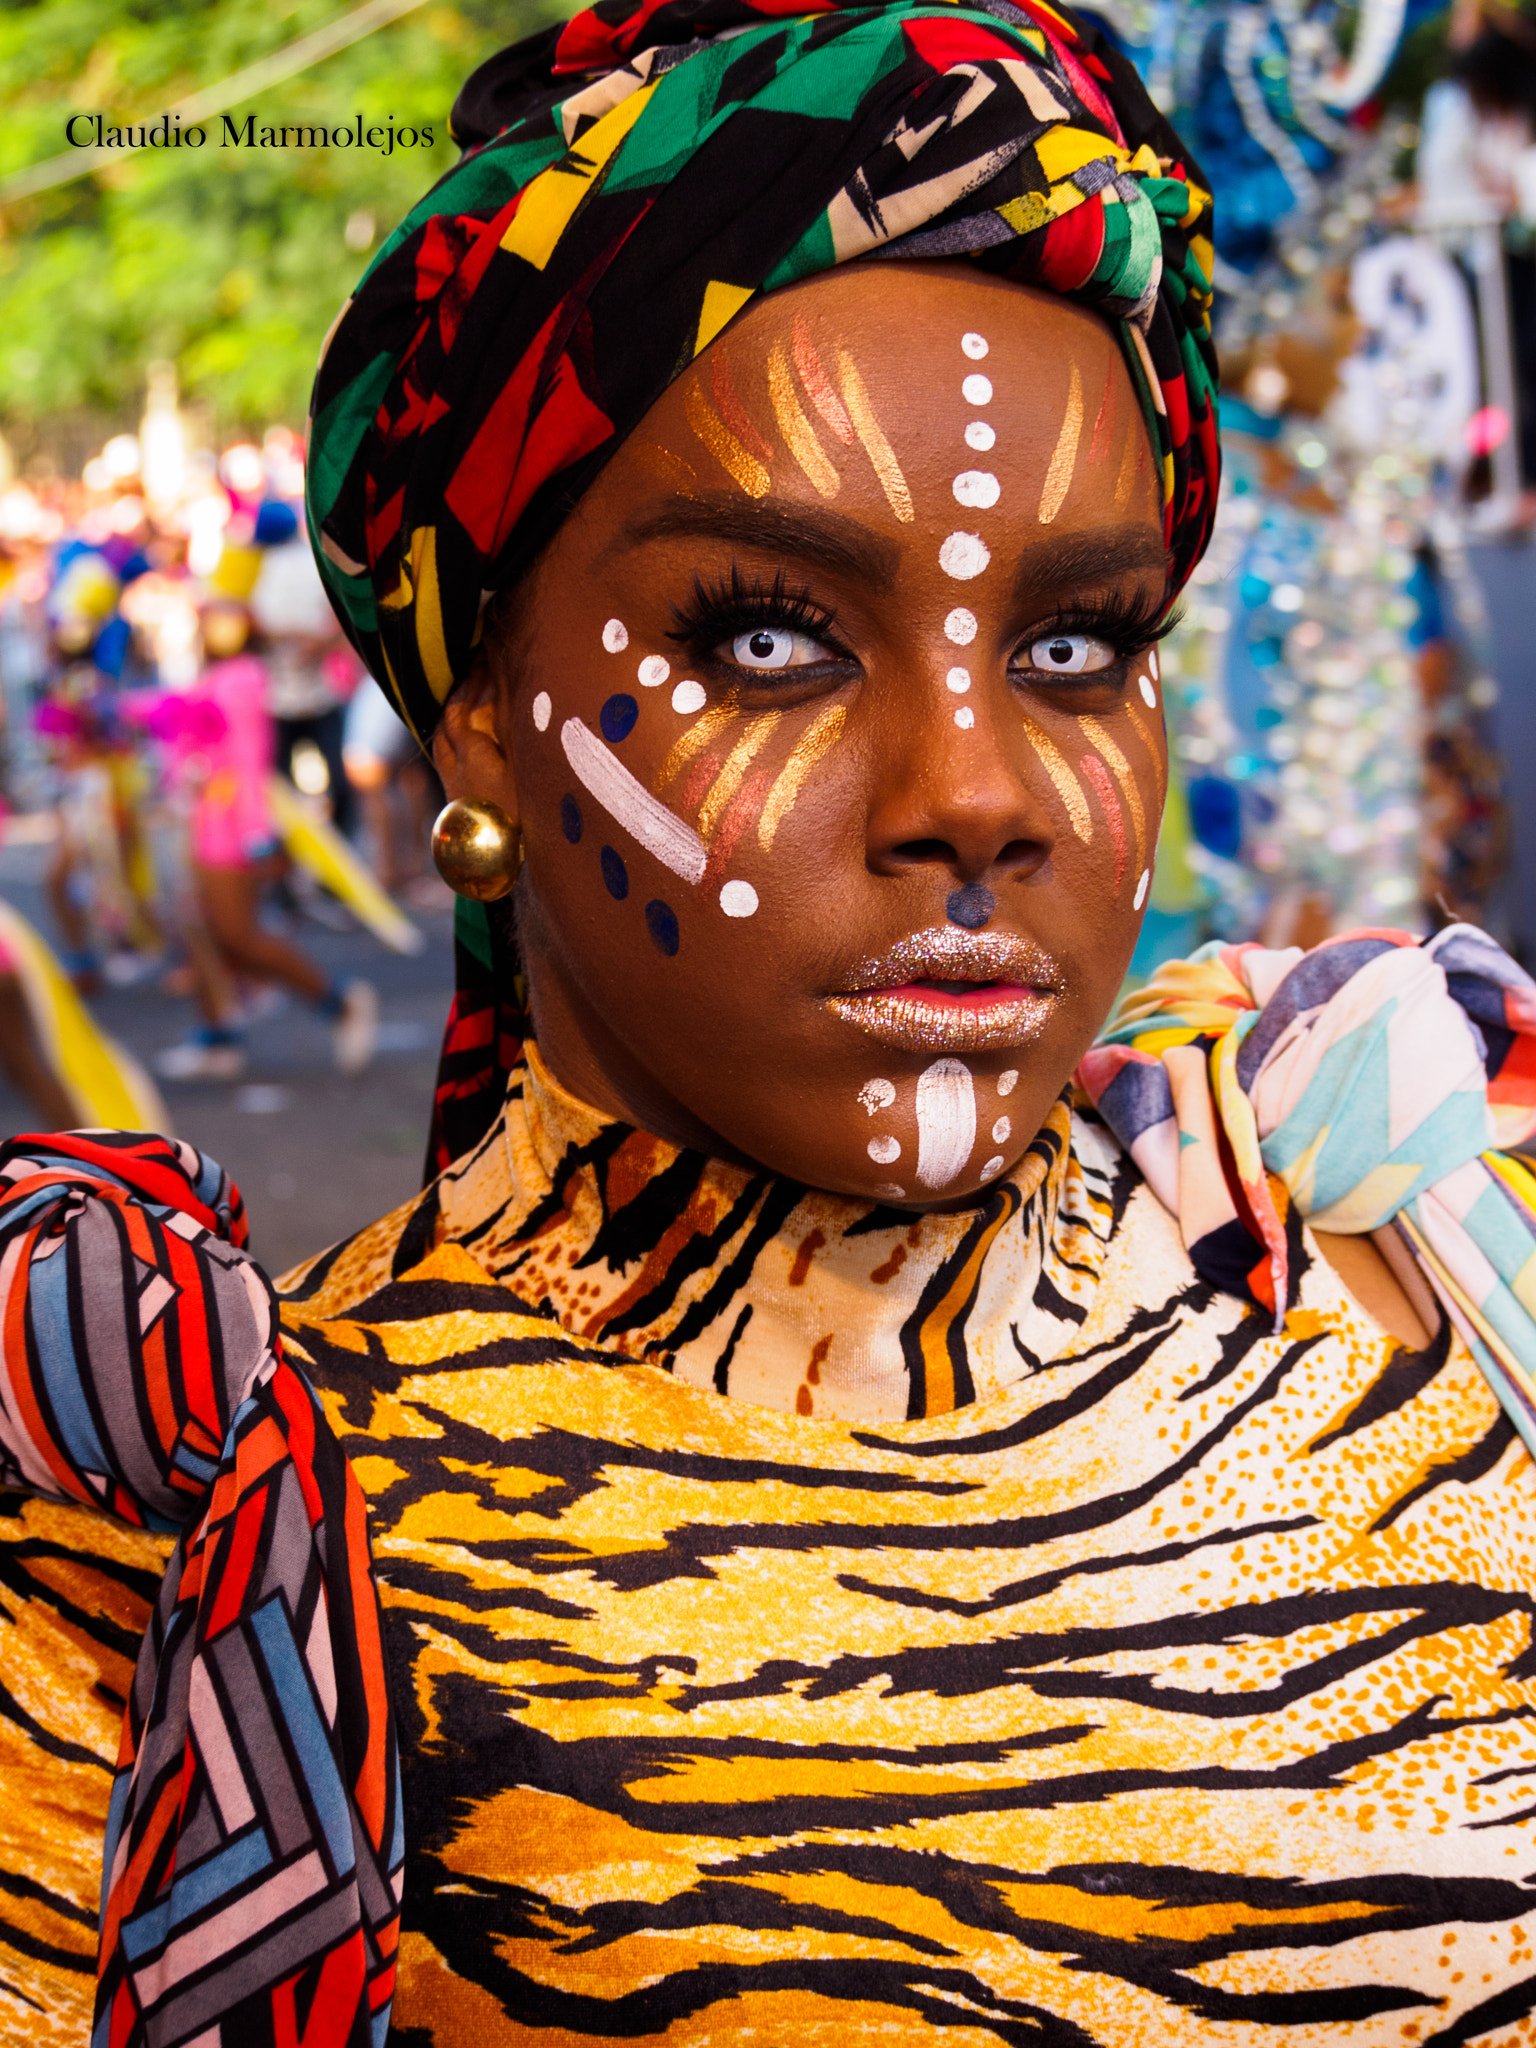 Olympus PEN E-PL3 sample photo. Mujer disfrazada de tigresa en el carnaval de santiago, rep. dom. photography